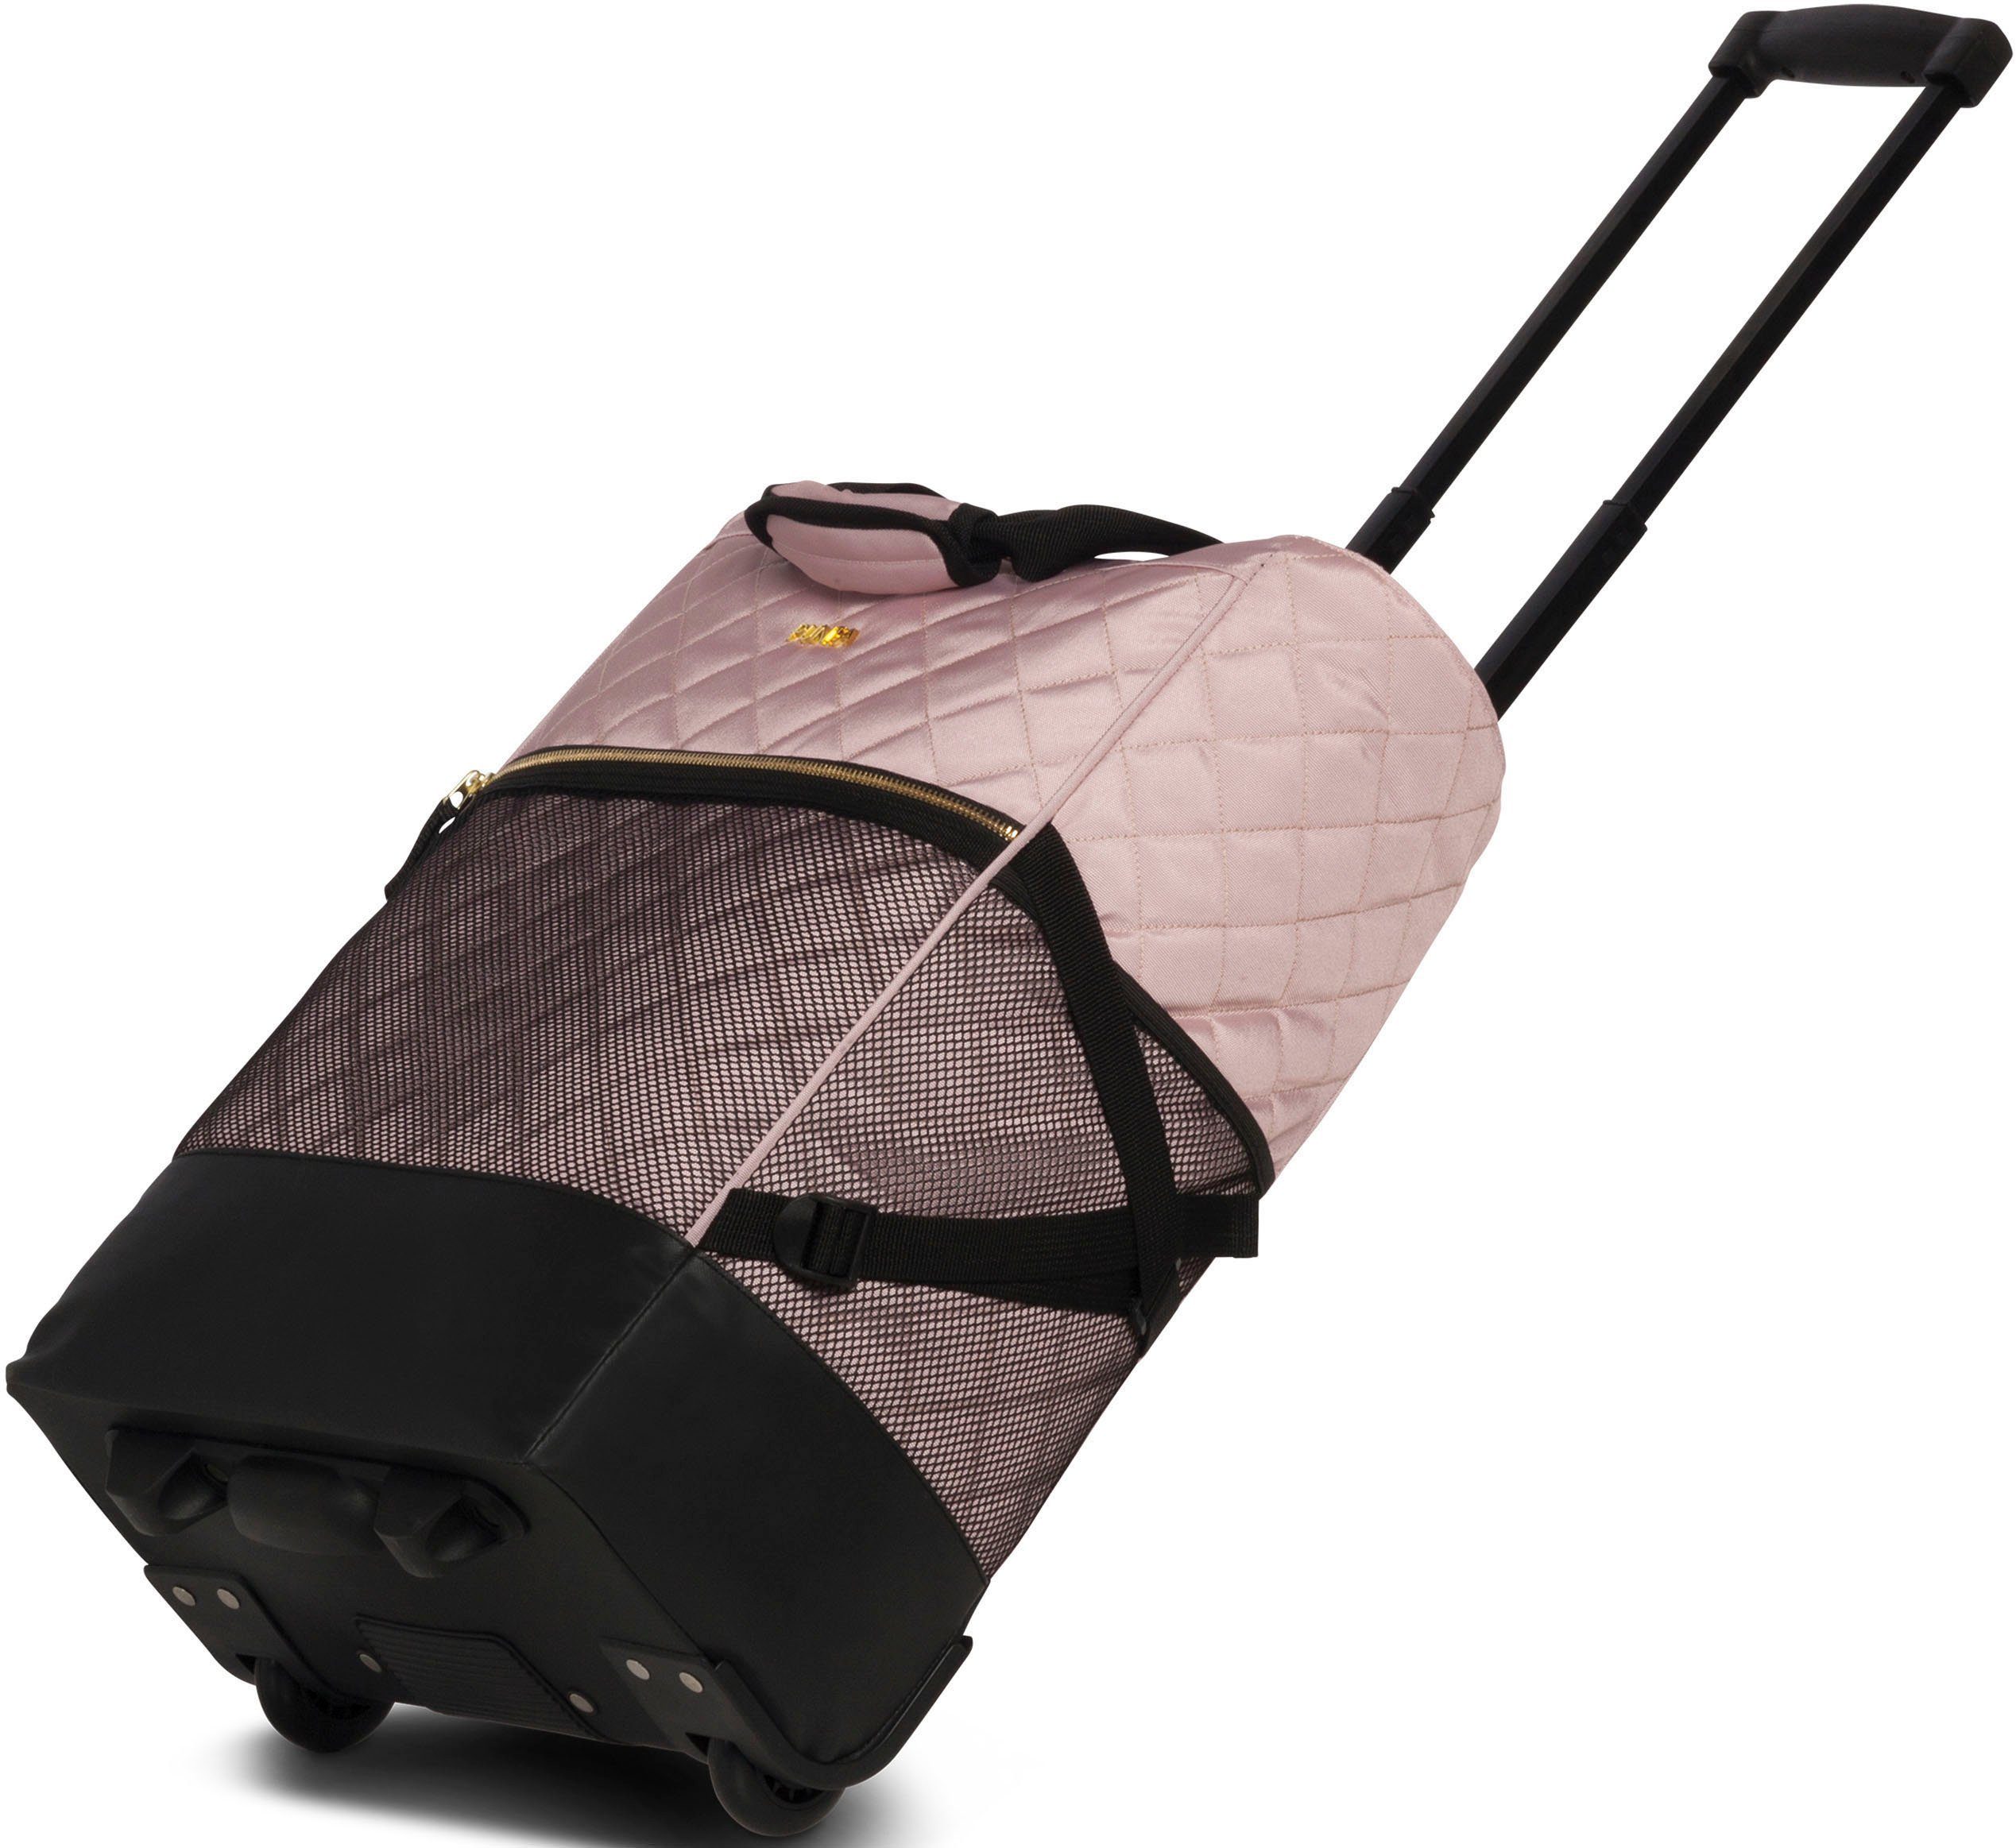 Golddetails abgestepter 33 fabrizio® edler Look und l, rosa Einkaufstrolley mit Punta-Wheel-Shopping-Roller, Oberfläche